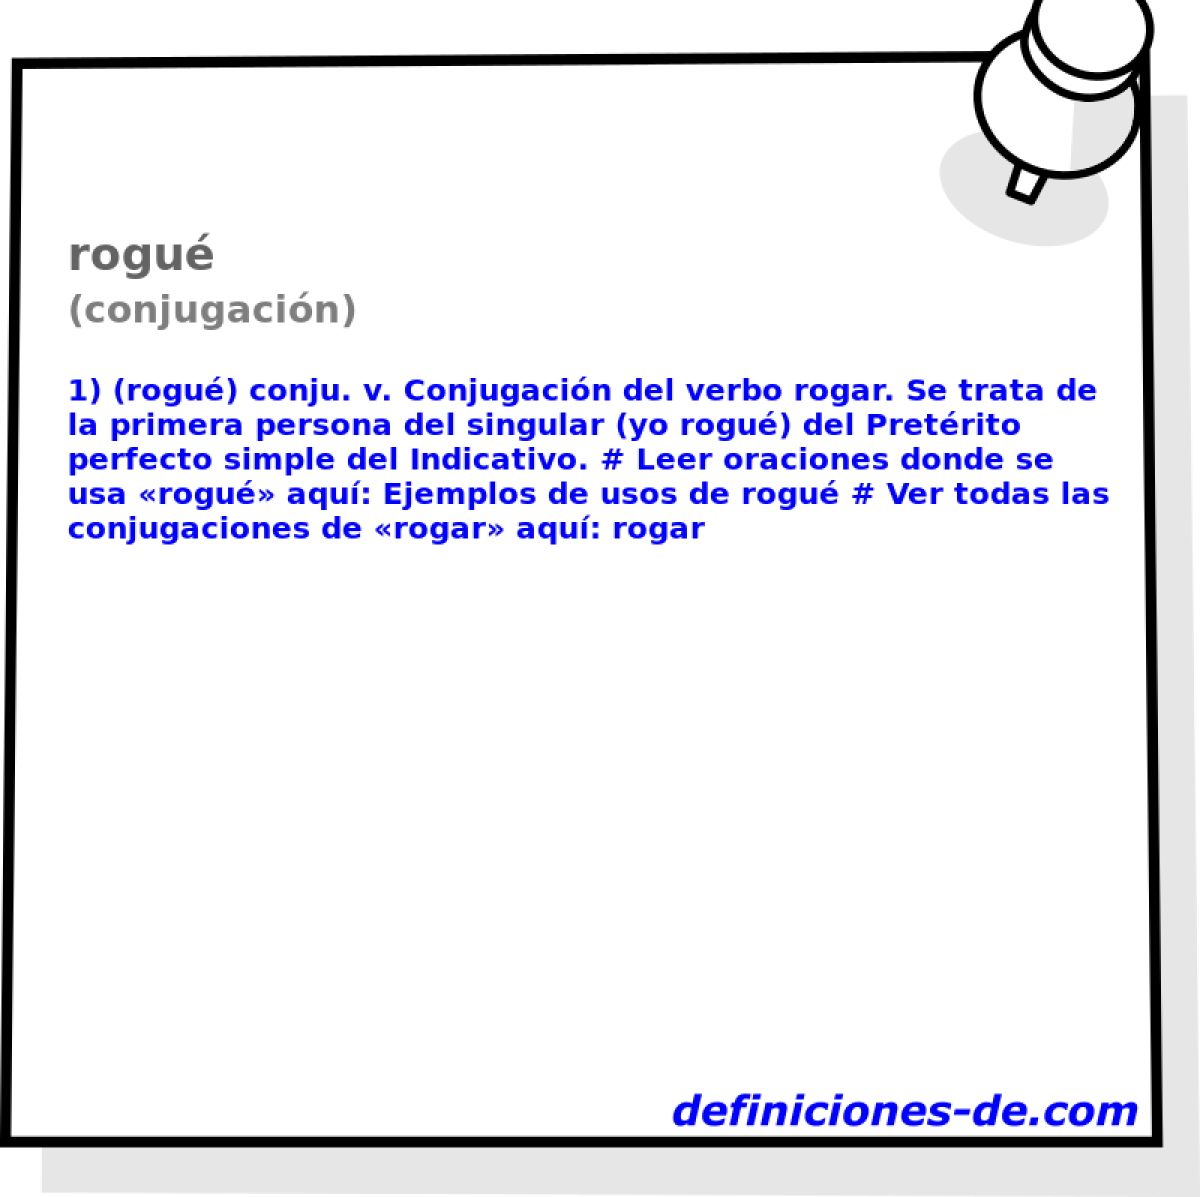 rogu (conjugacin)